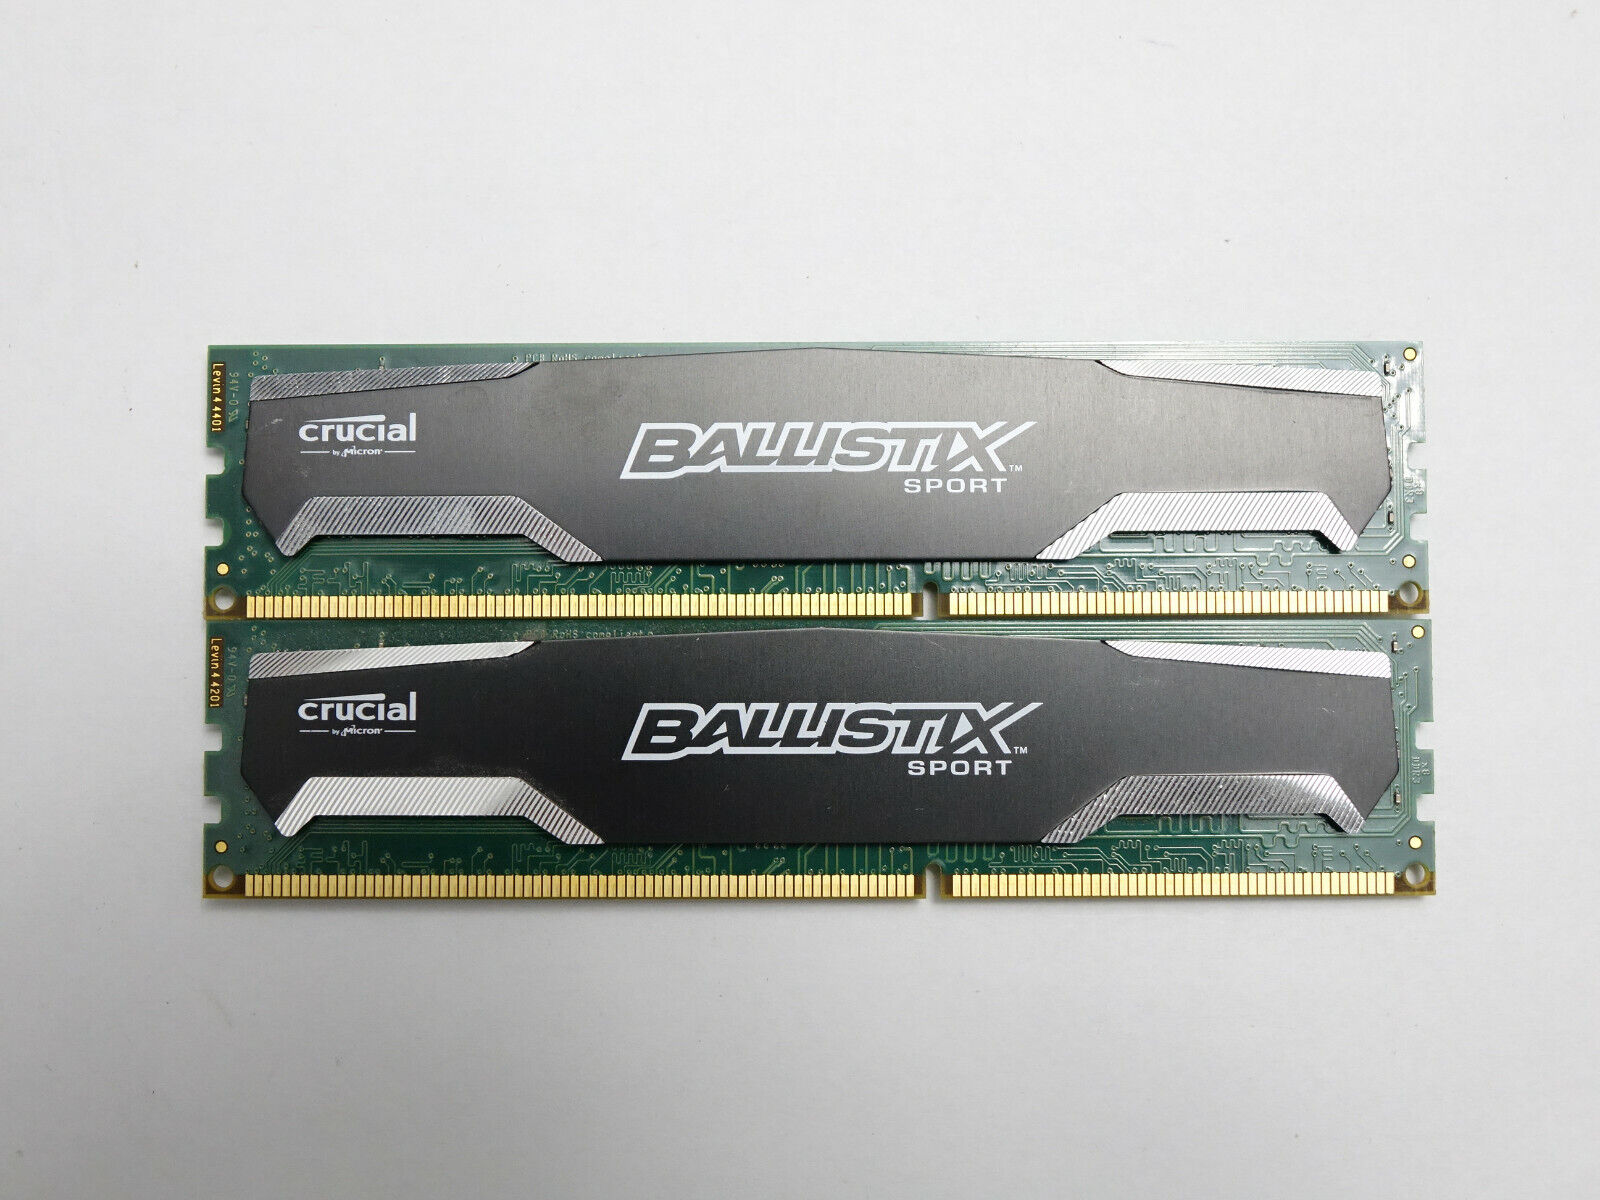 Ballistix Sport 16GB (2x 8GB) DDR3 (PC3 12800) P15-86 BLS8G3D1609DS1S00 DDR3 RAM